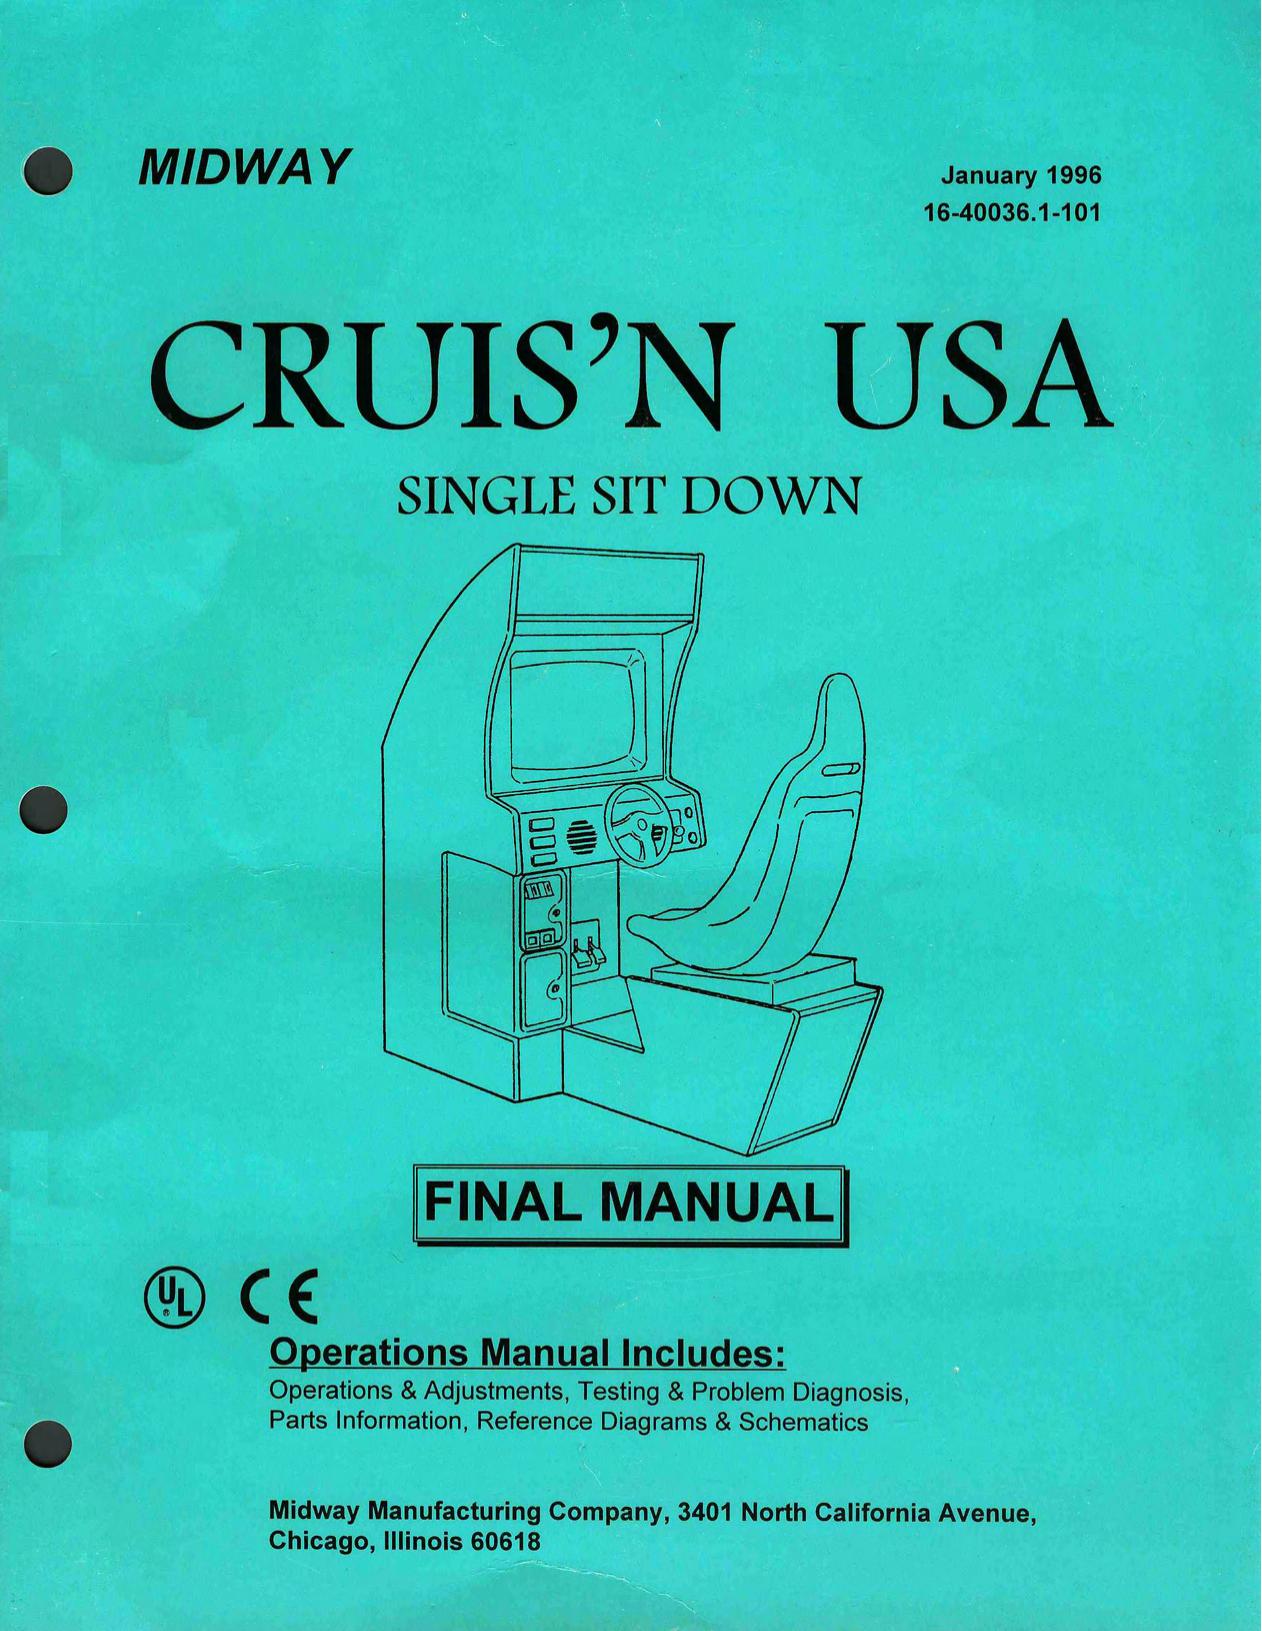 Cruis'n USA Single Sit Down (16-40036.1-101 Jan 1996)